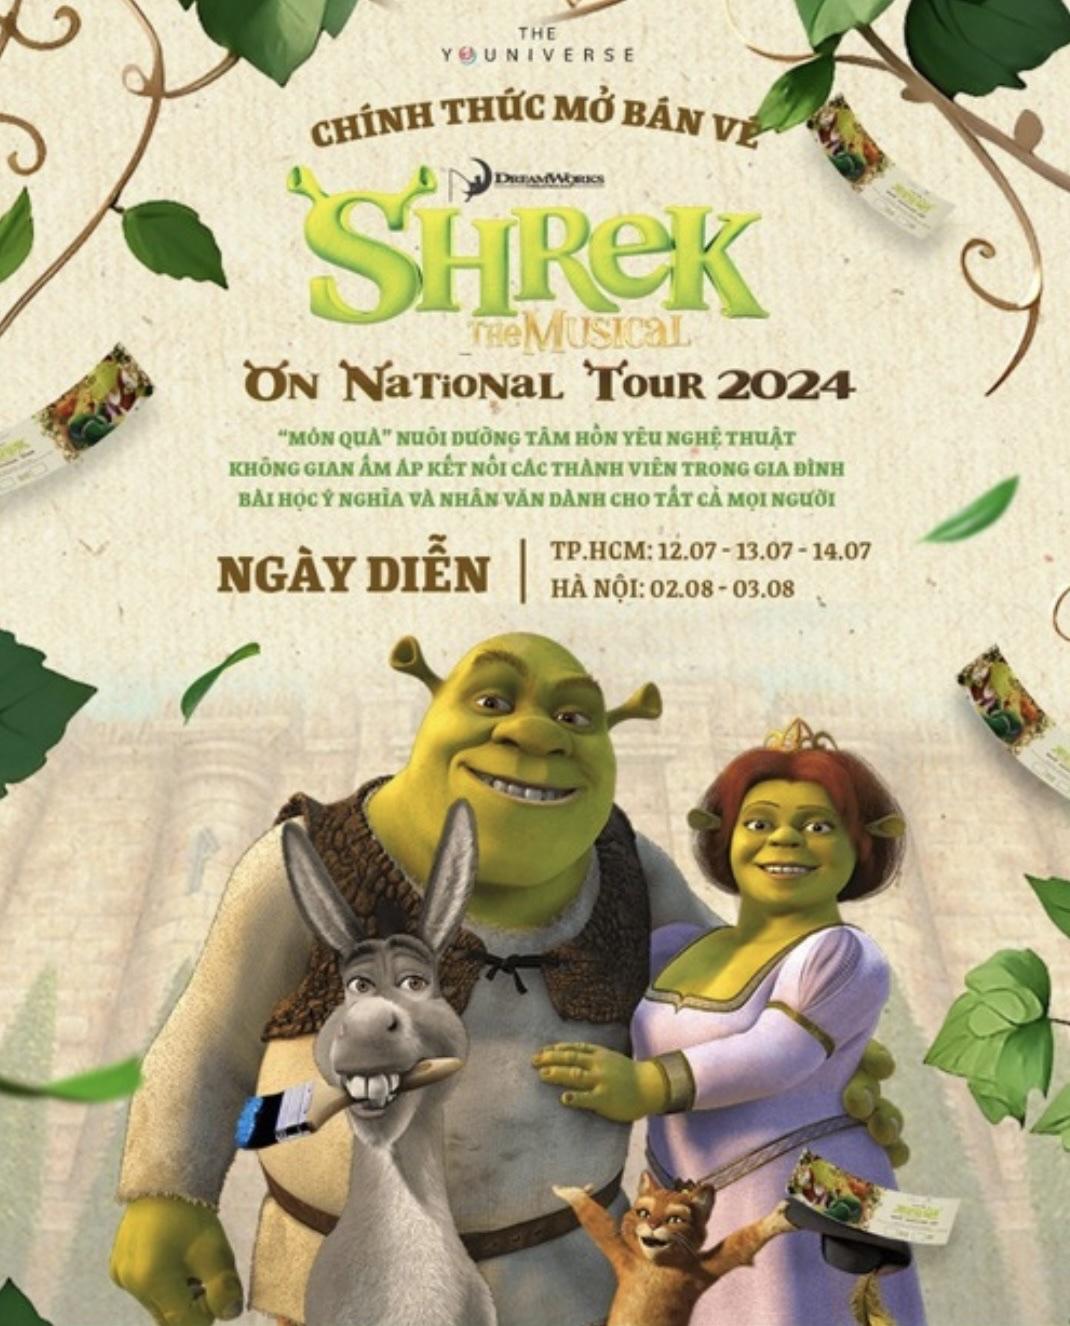 Nhạc kịch “Shrek” tái xuất khán giả Việt Nam - ảnh 1